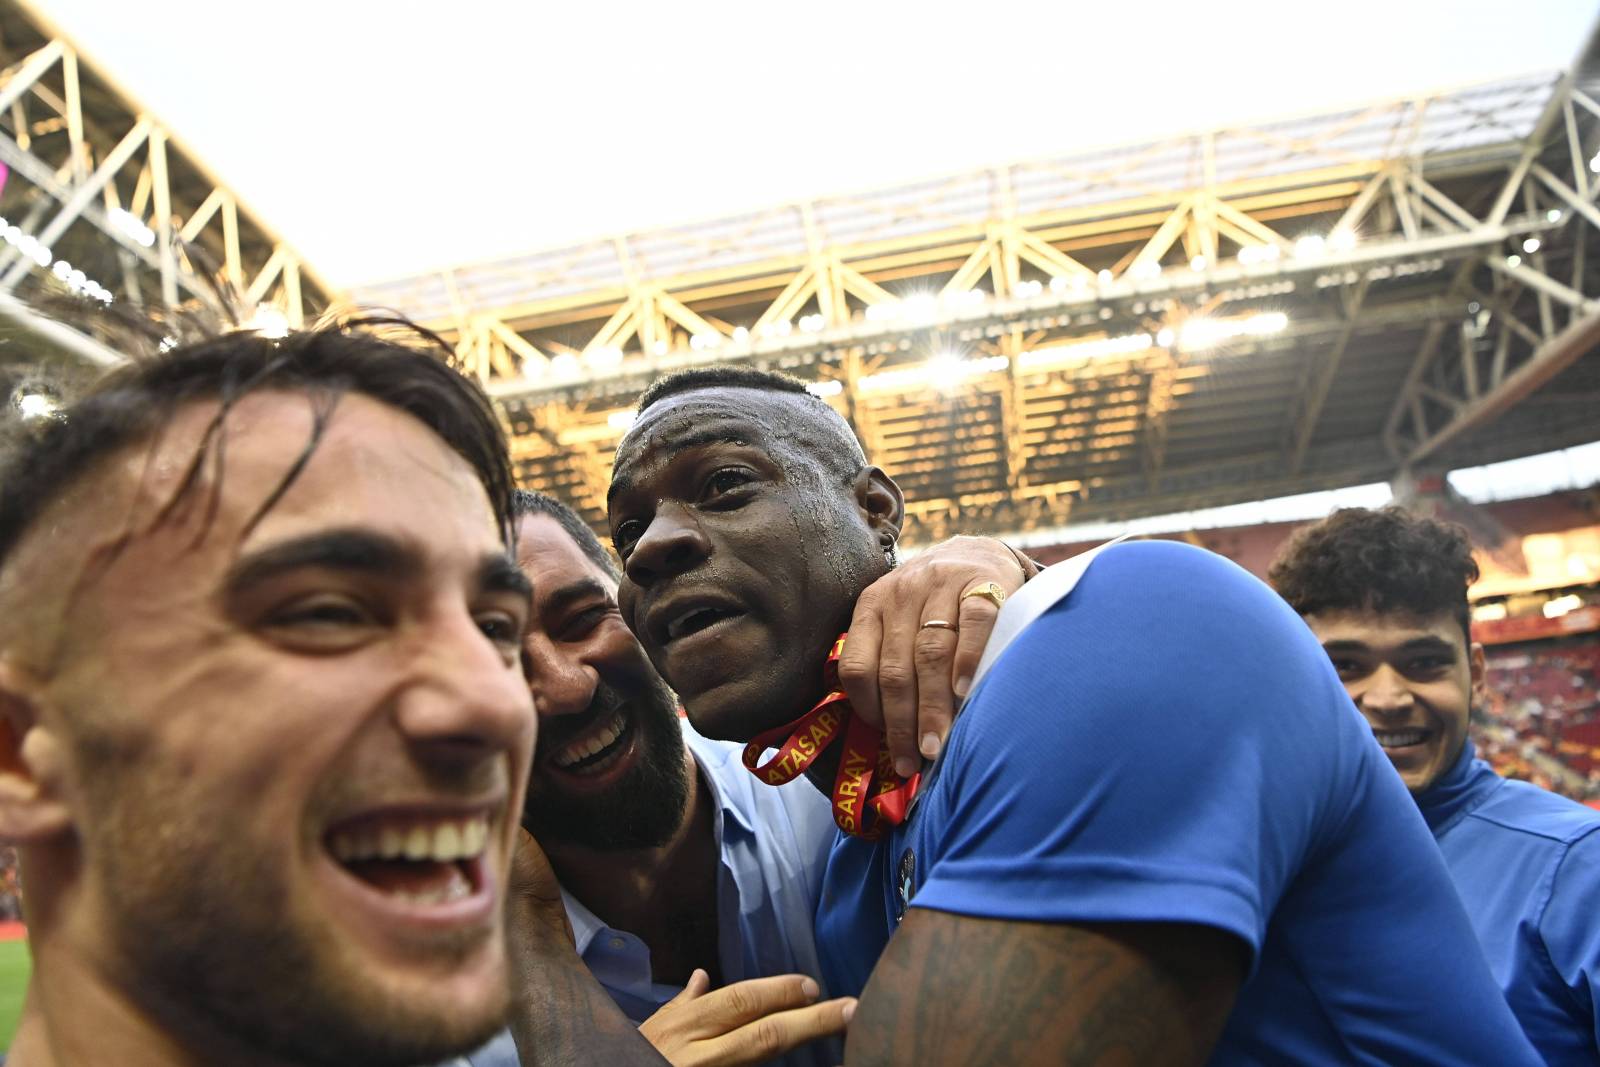 Балотелли оформил пента-трик в матче чемпионата Турции, забив один из мячей рабоной - видео